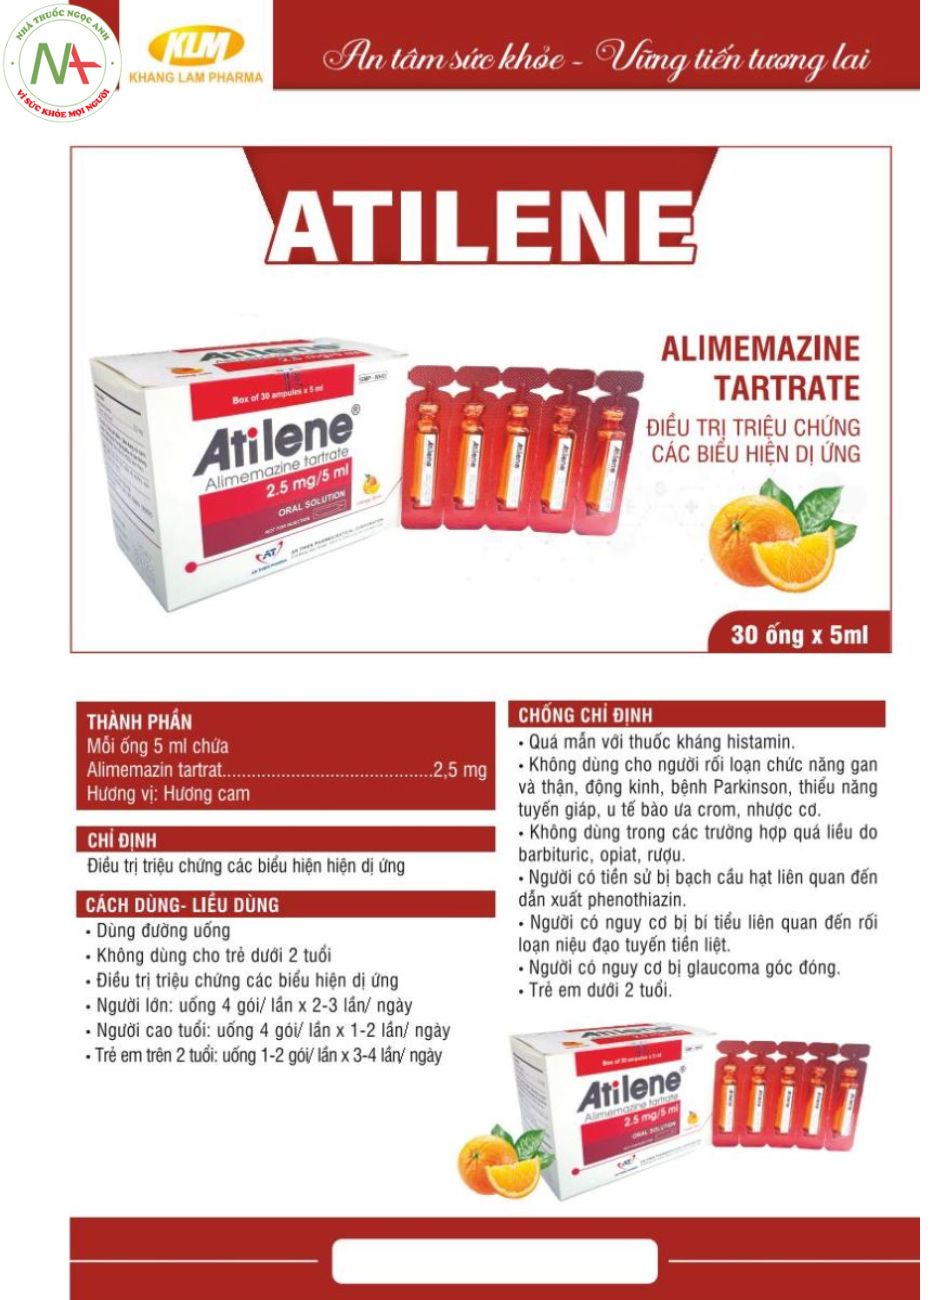 Thuốc Atilene hương vị cam rất phù hợp cho trẻ nhỏ